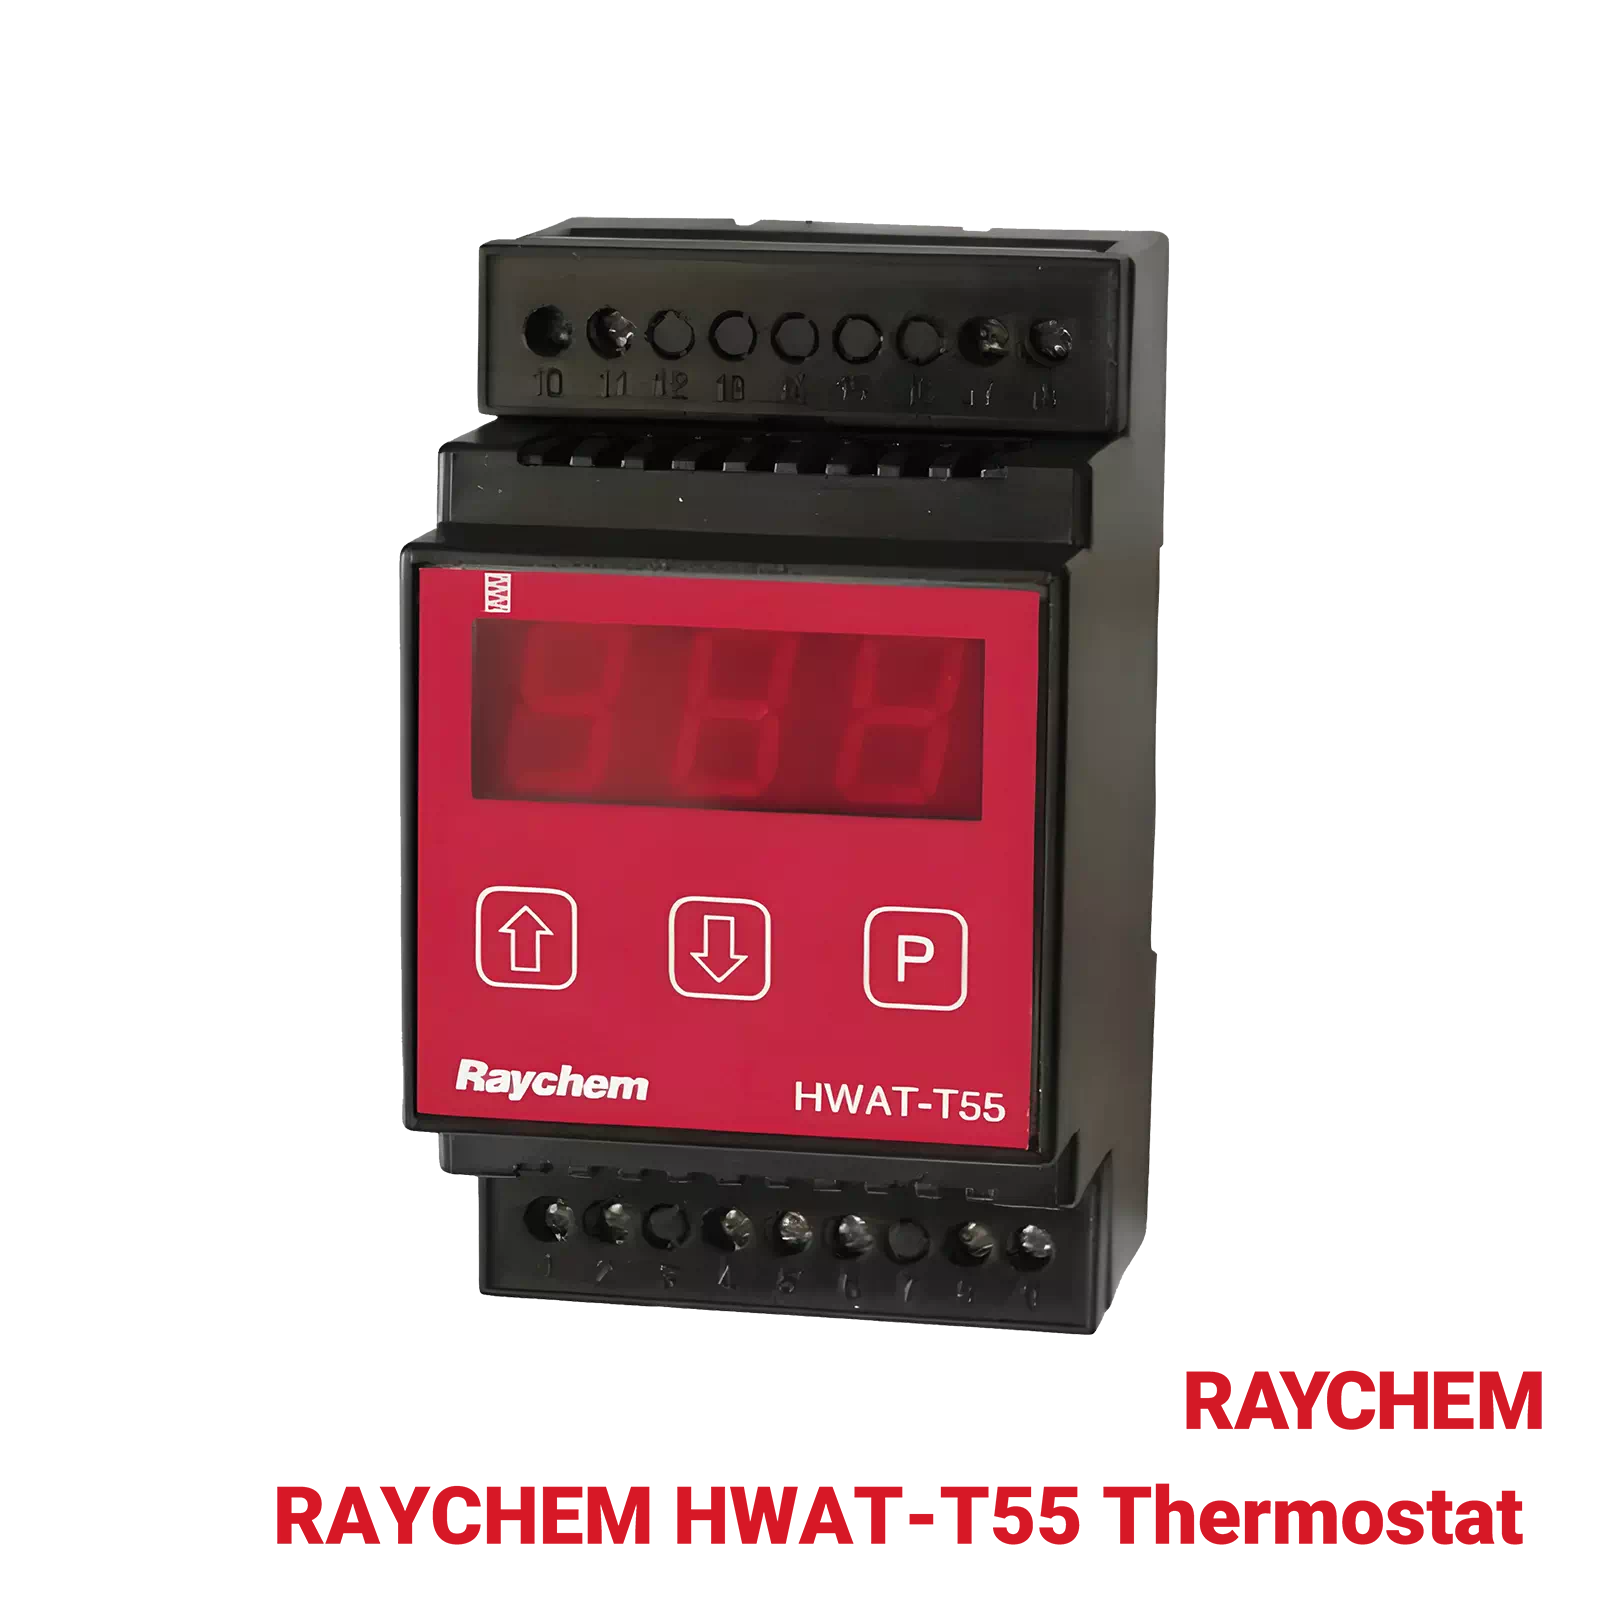 RAYCHEM-HWAT-T55-Thermostat-Raychem-Industrial-Heating